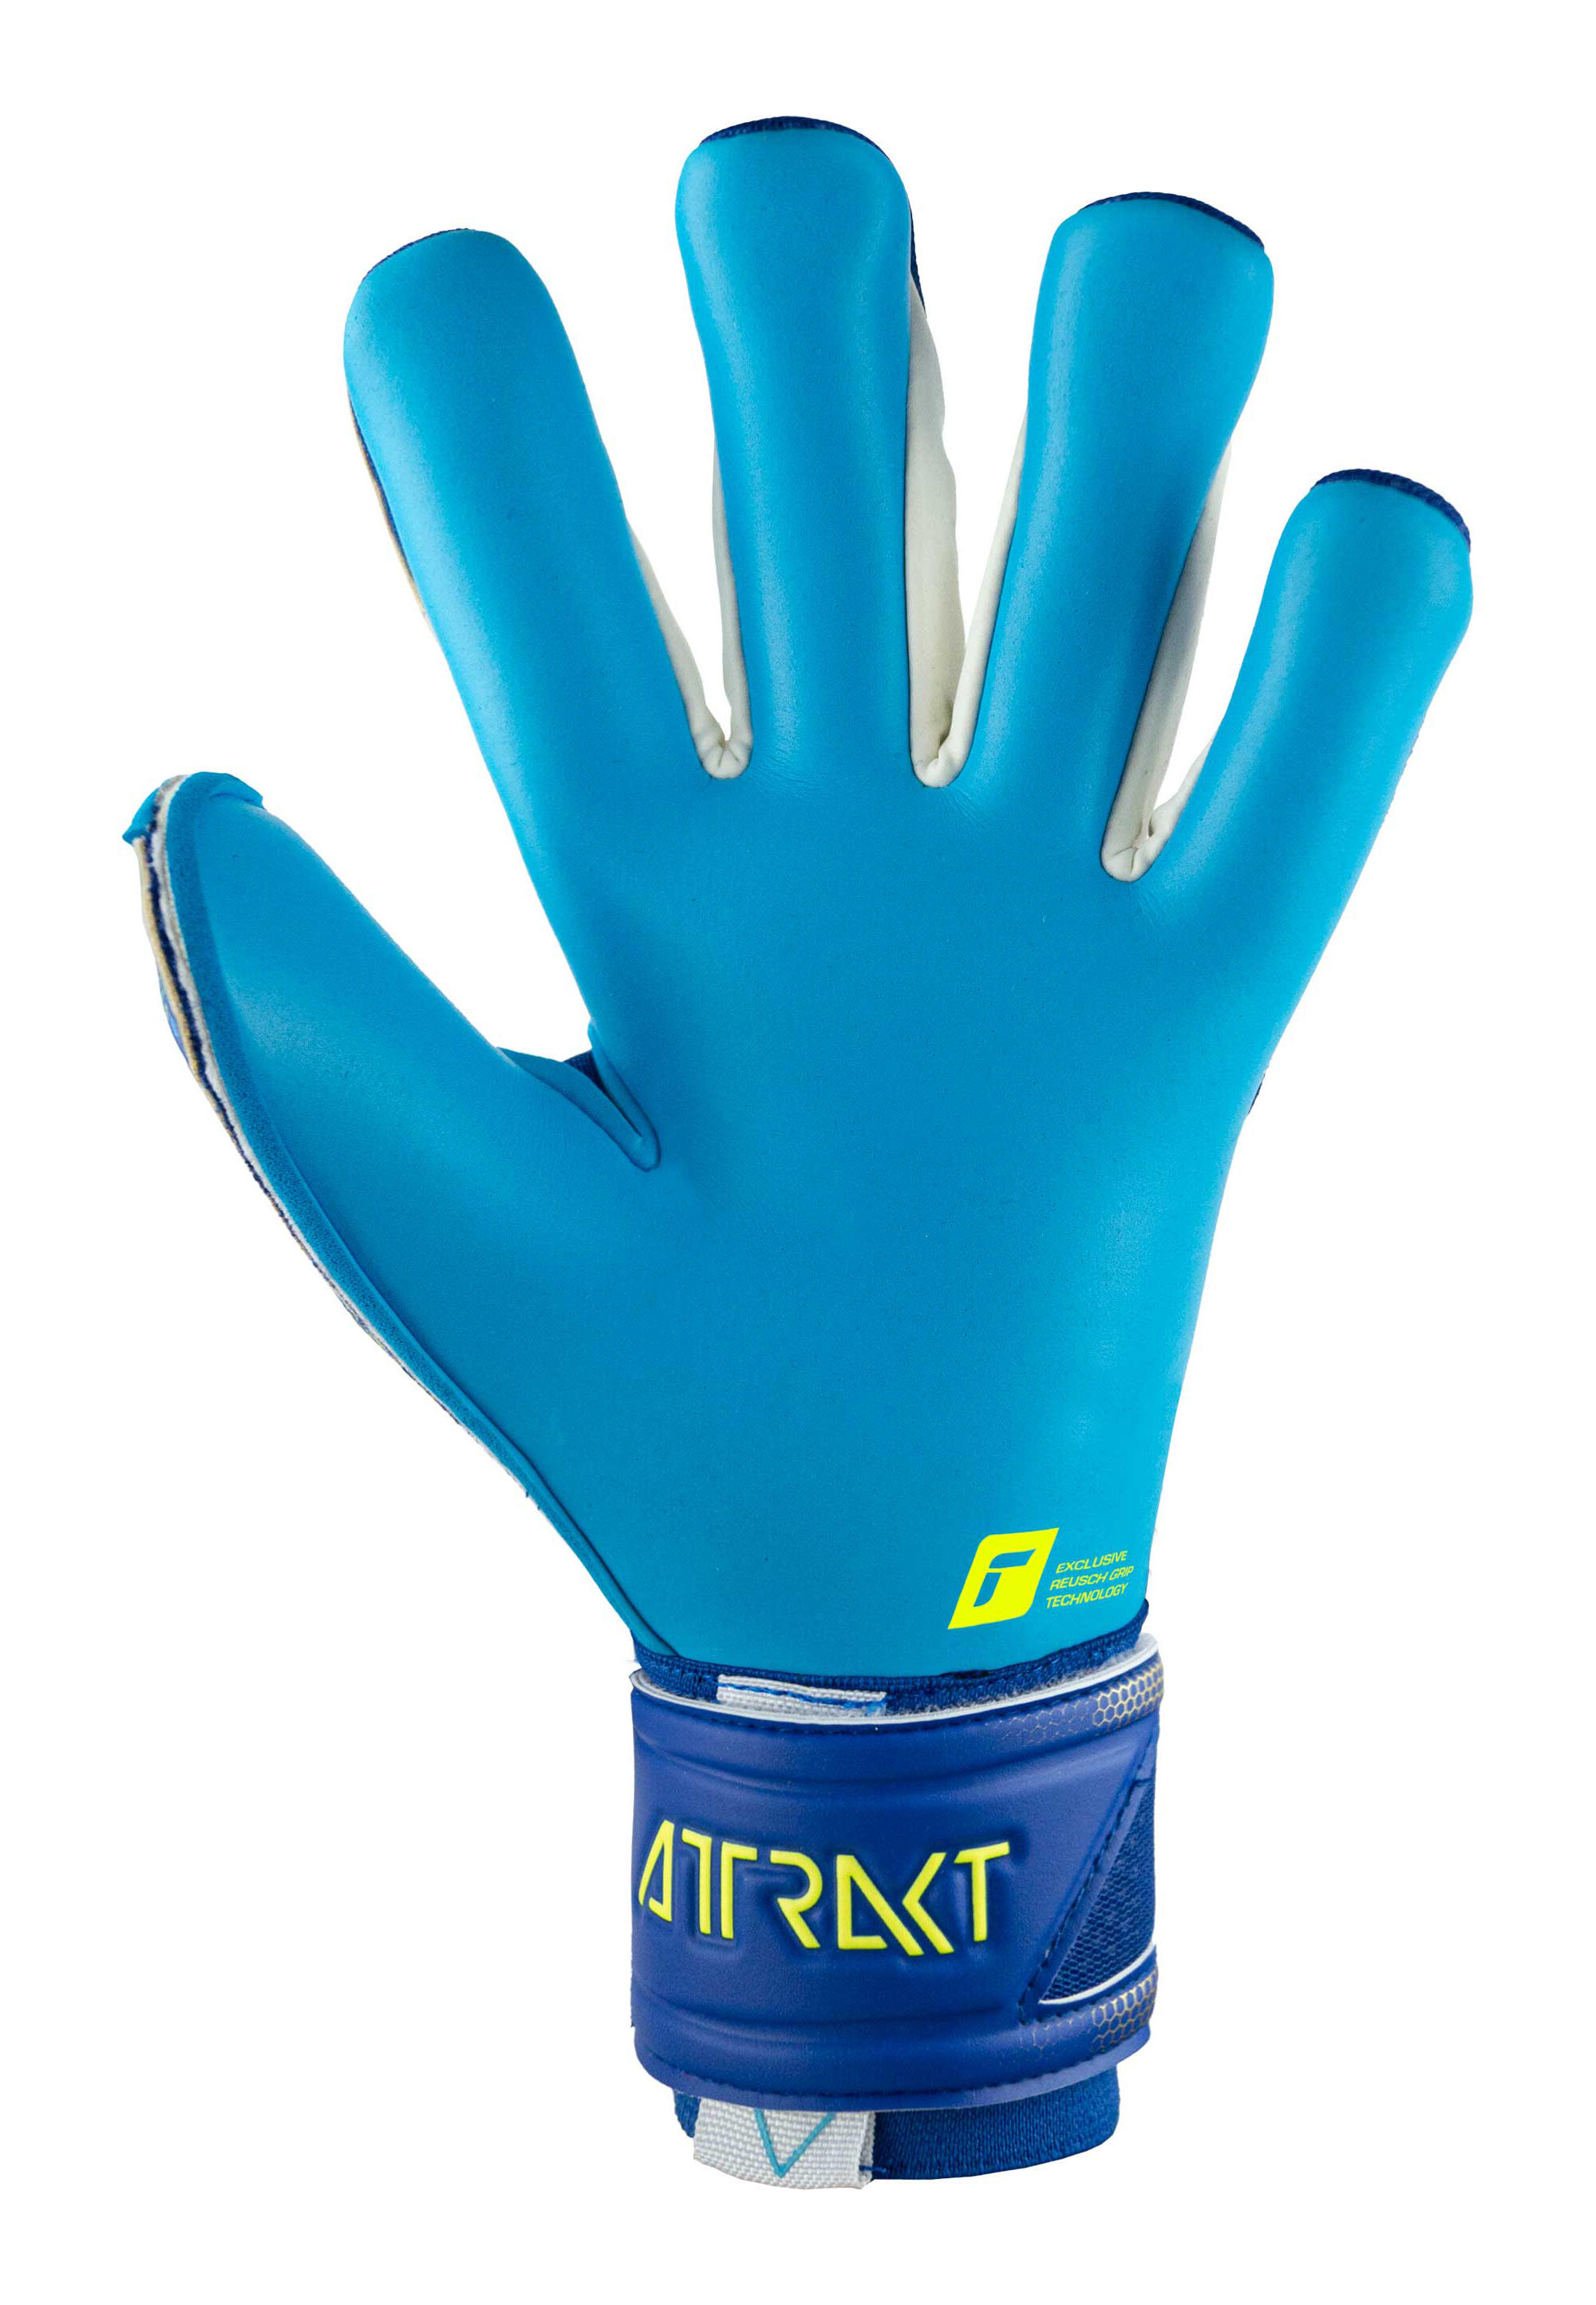 Reusch Attrakt Aqua  Goalkeeper Gloves 4/7